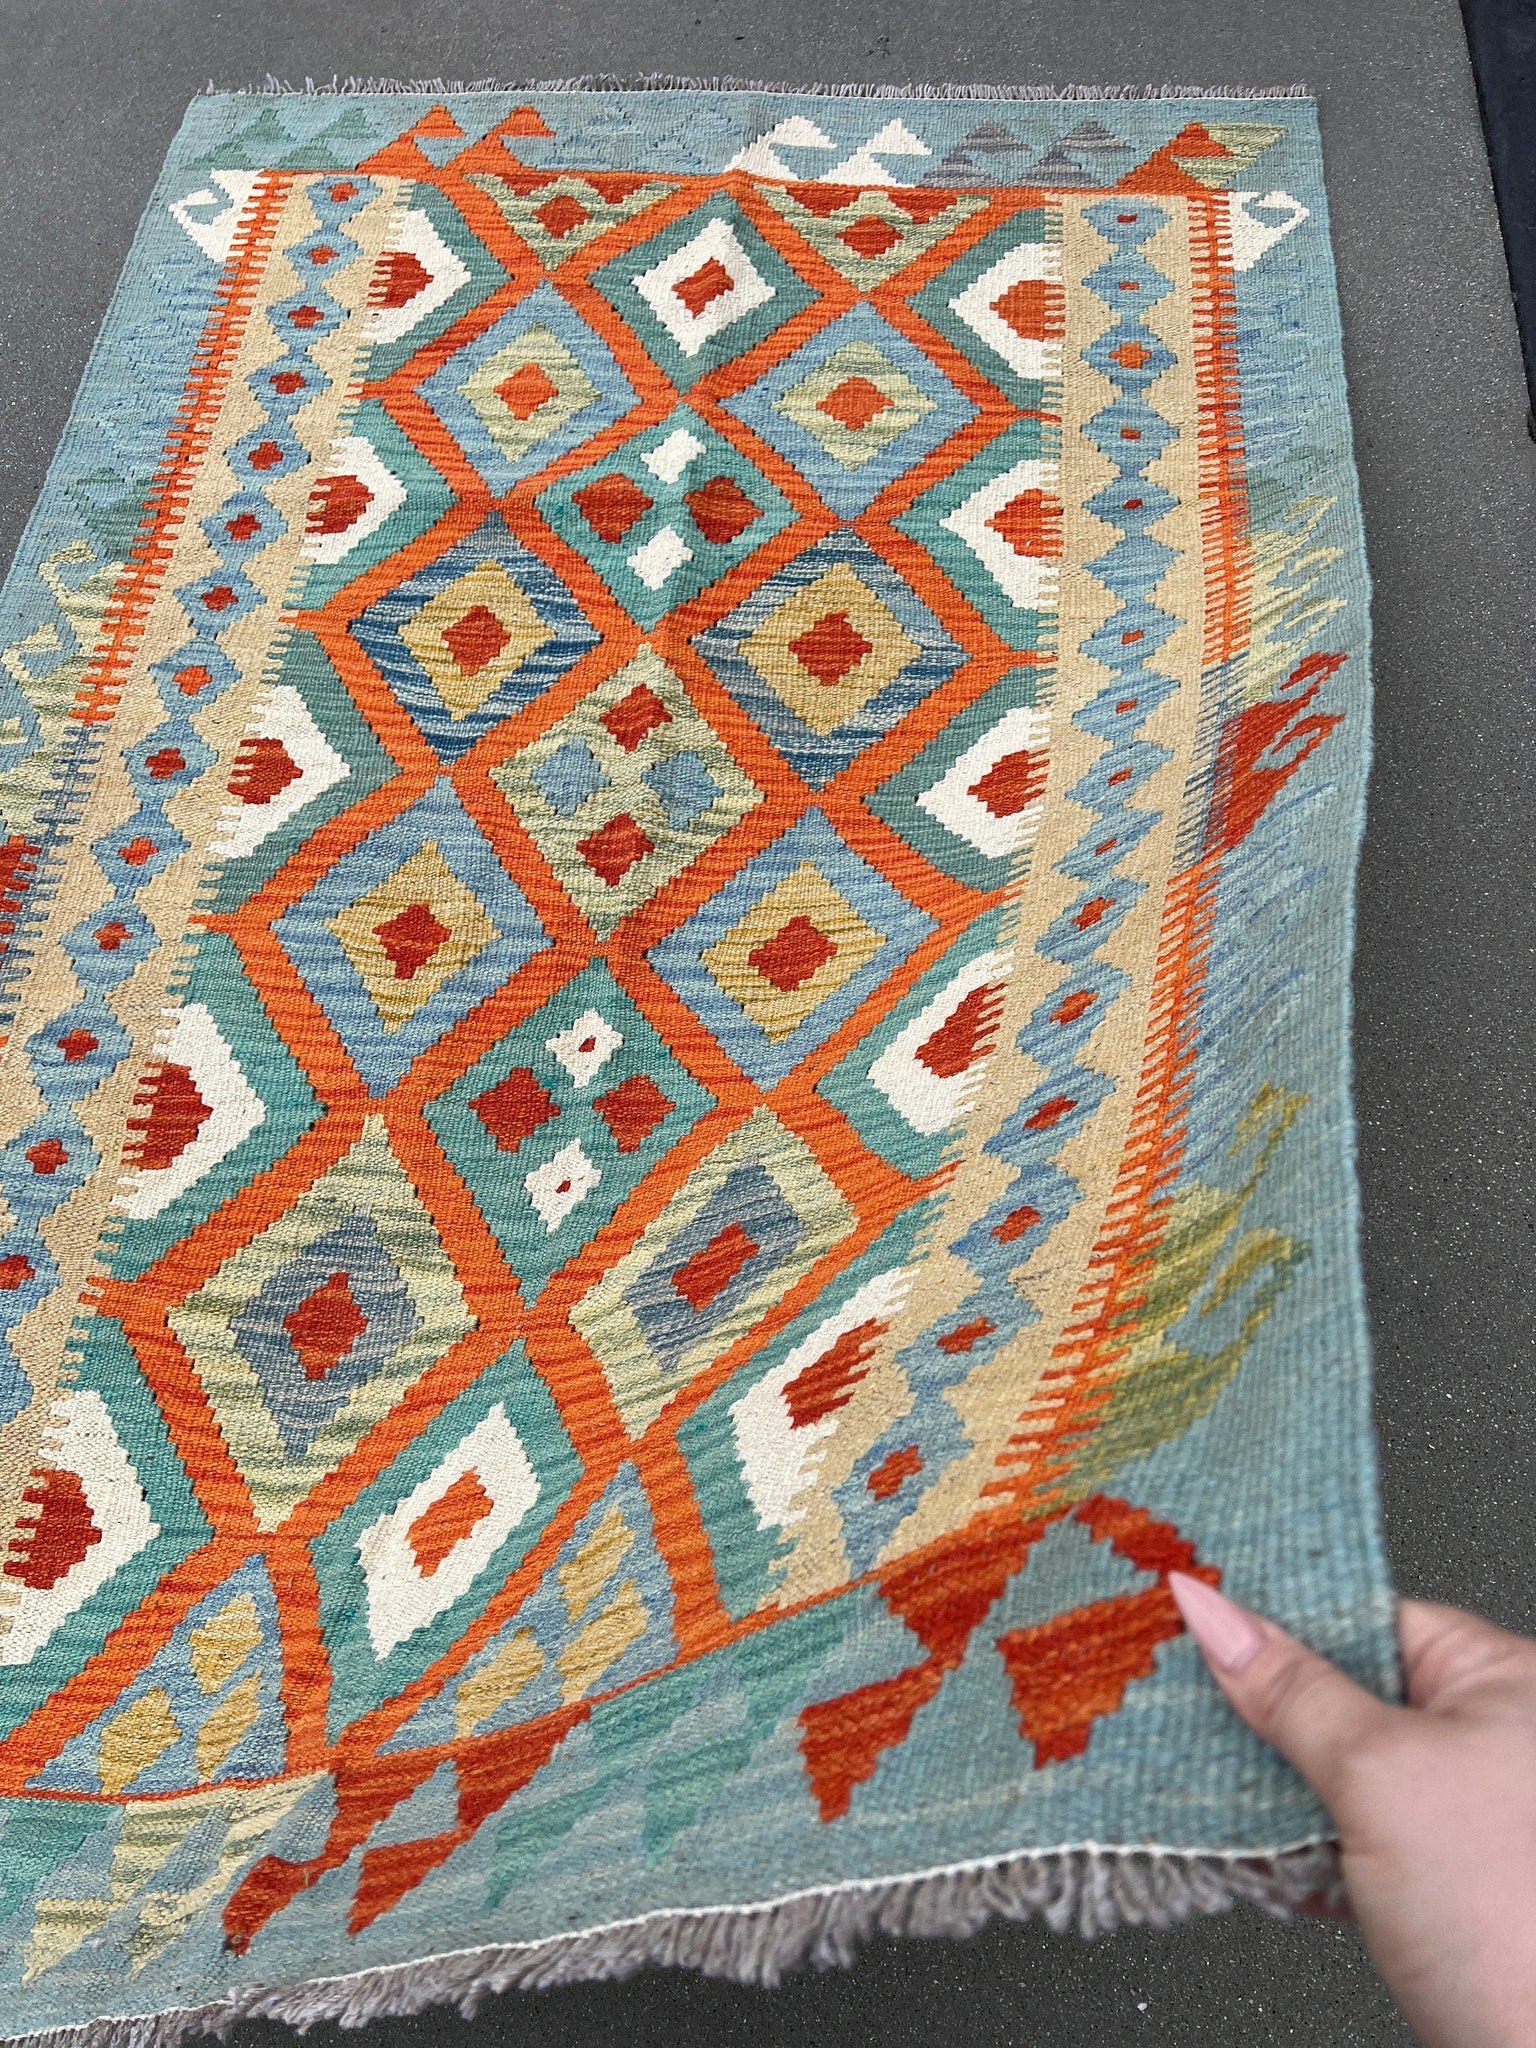 3x5~4x5 Handmade Afghan Kilim Rug | Turquoise Teal Coral Burnt Orange Ivory Olive Green | Hand Knotted Geometric Wool Bohemian Flatweave